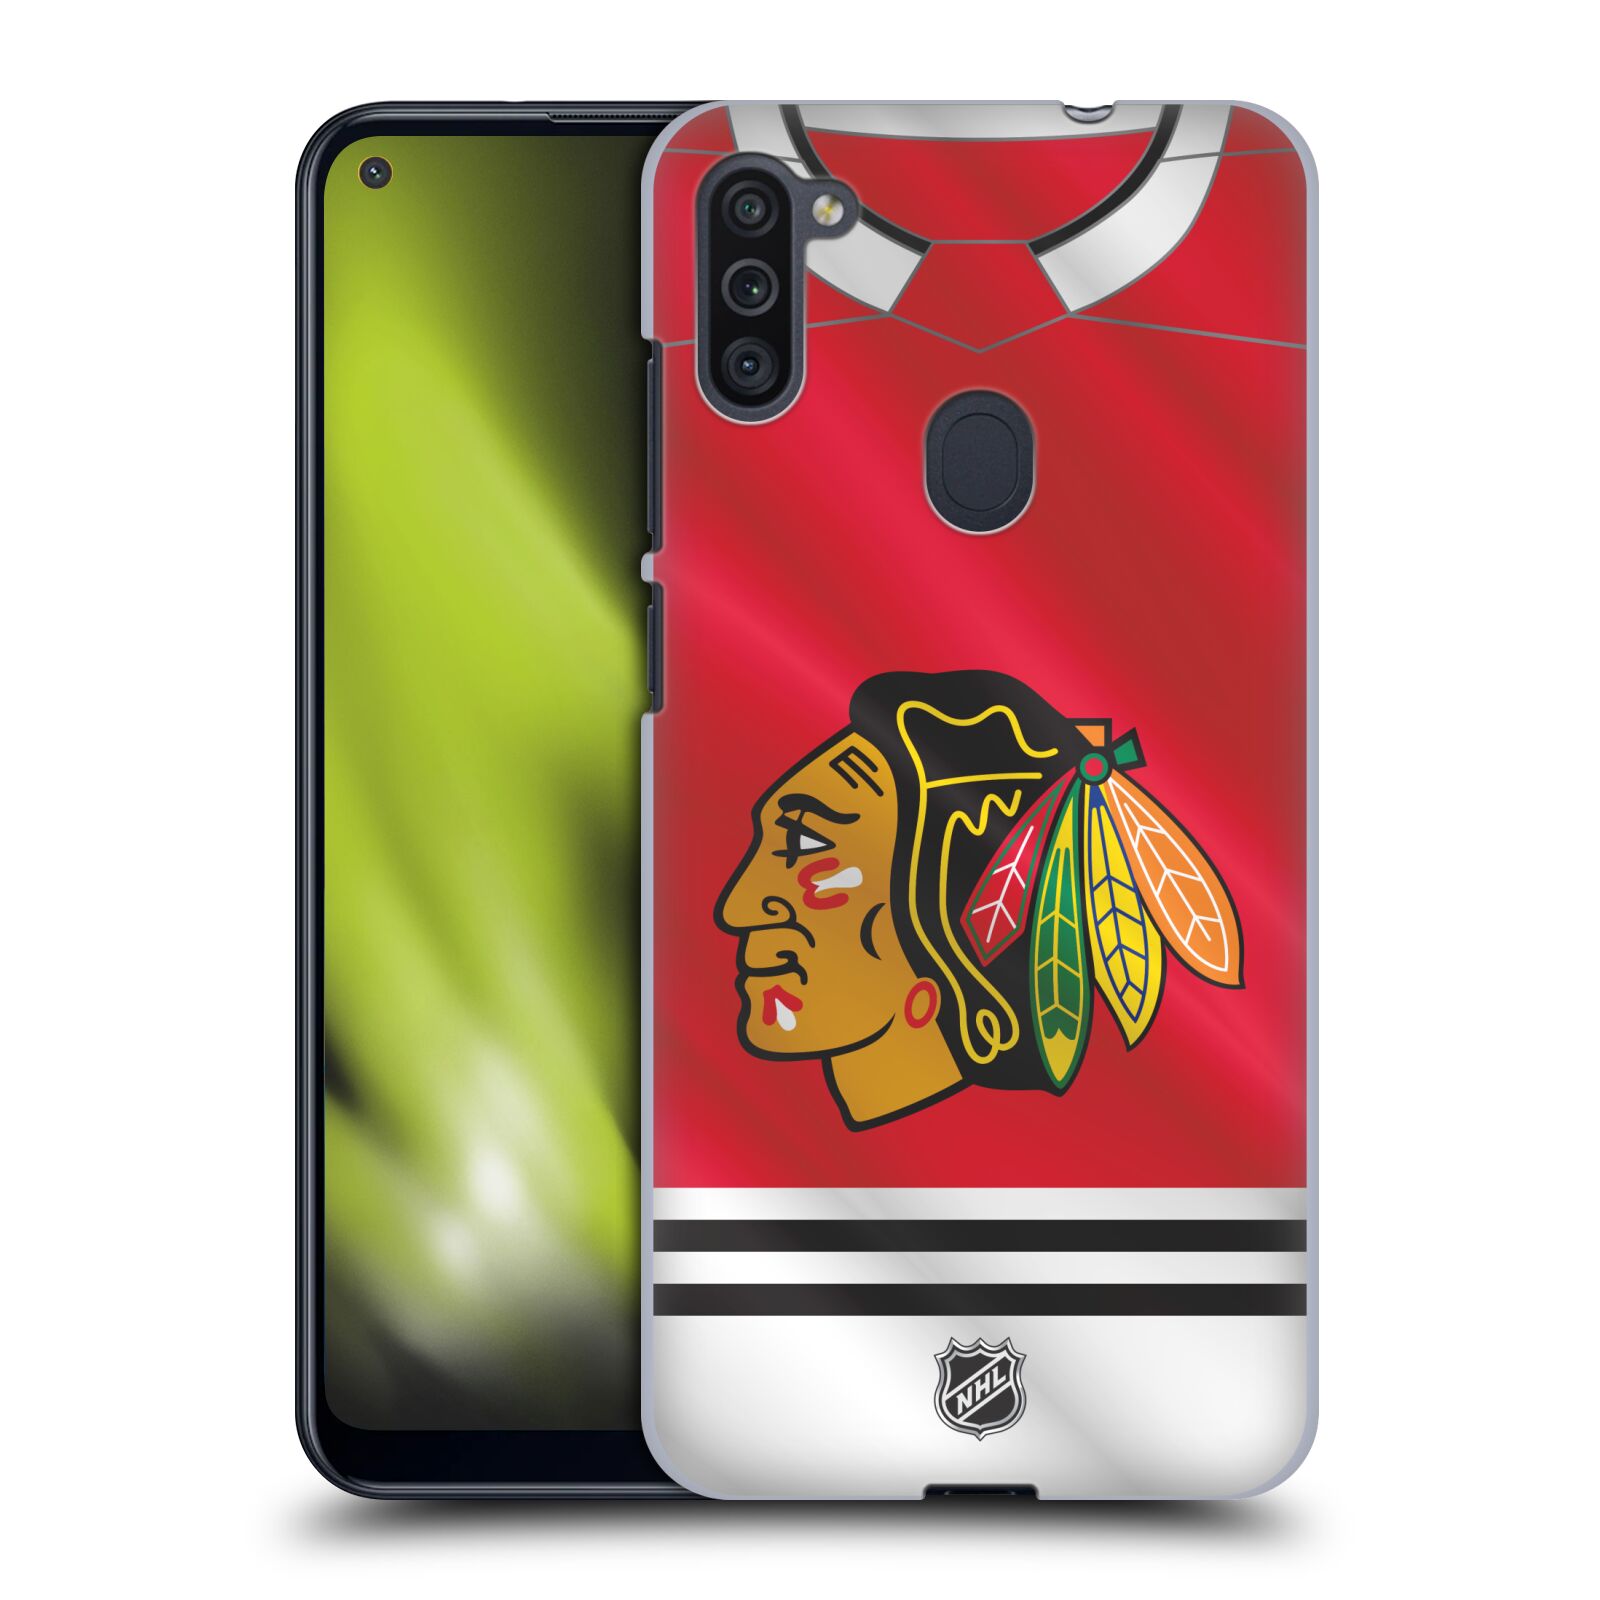 Pouzdro na mobil Samsung Galaxy M11 - HEAD CASE - Hokej NHL - Chicago Blackhawks - dres